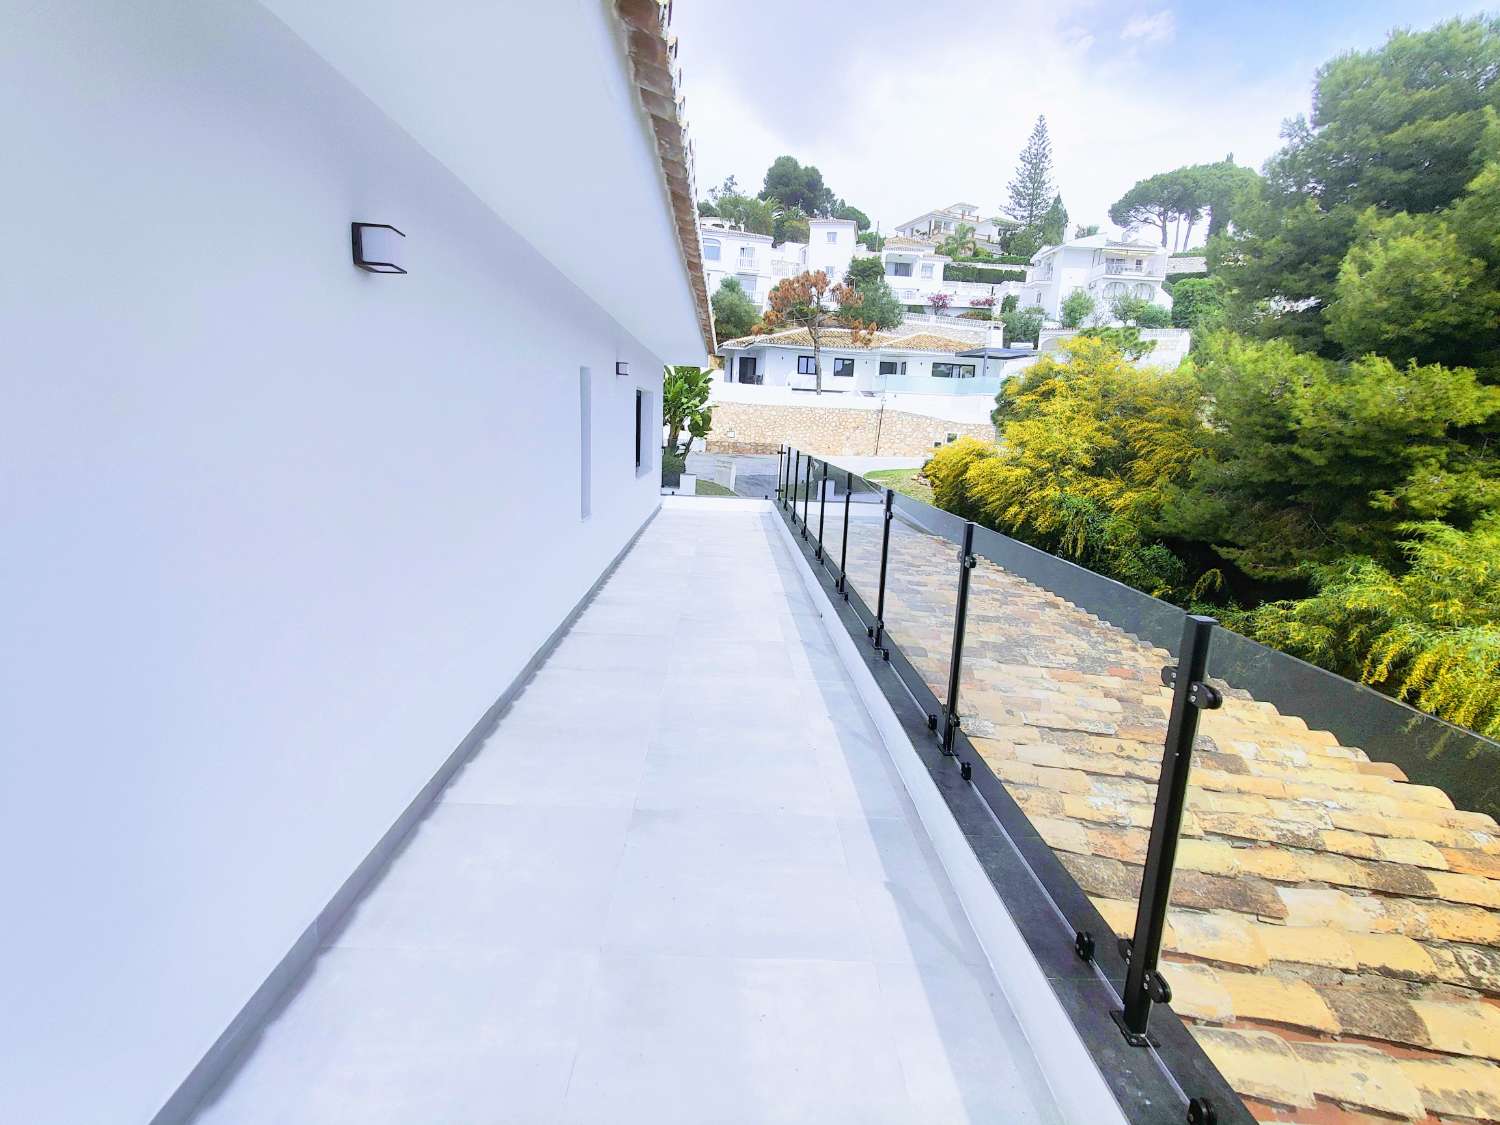 Spektakulær villa i La Cala de Mijas 677 meter i lige linje fra stranden og med havudsigt.